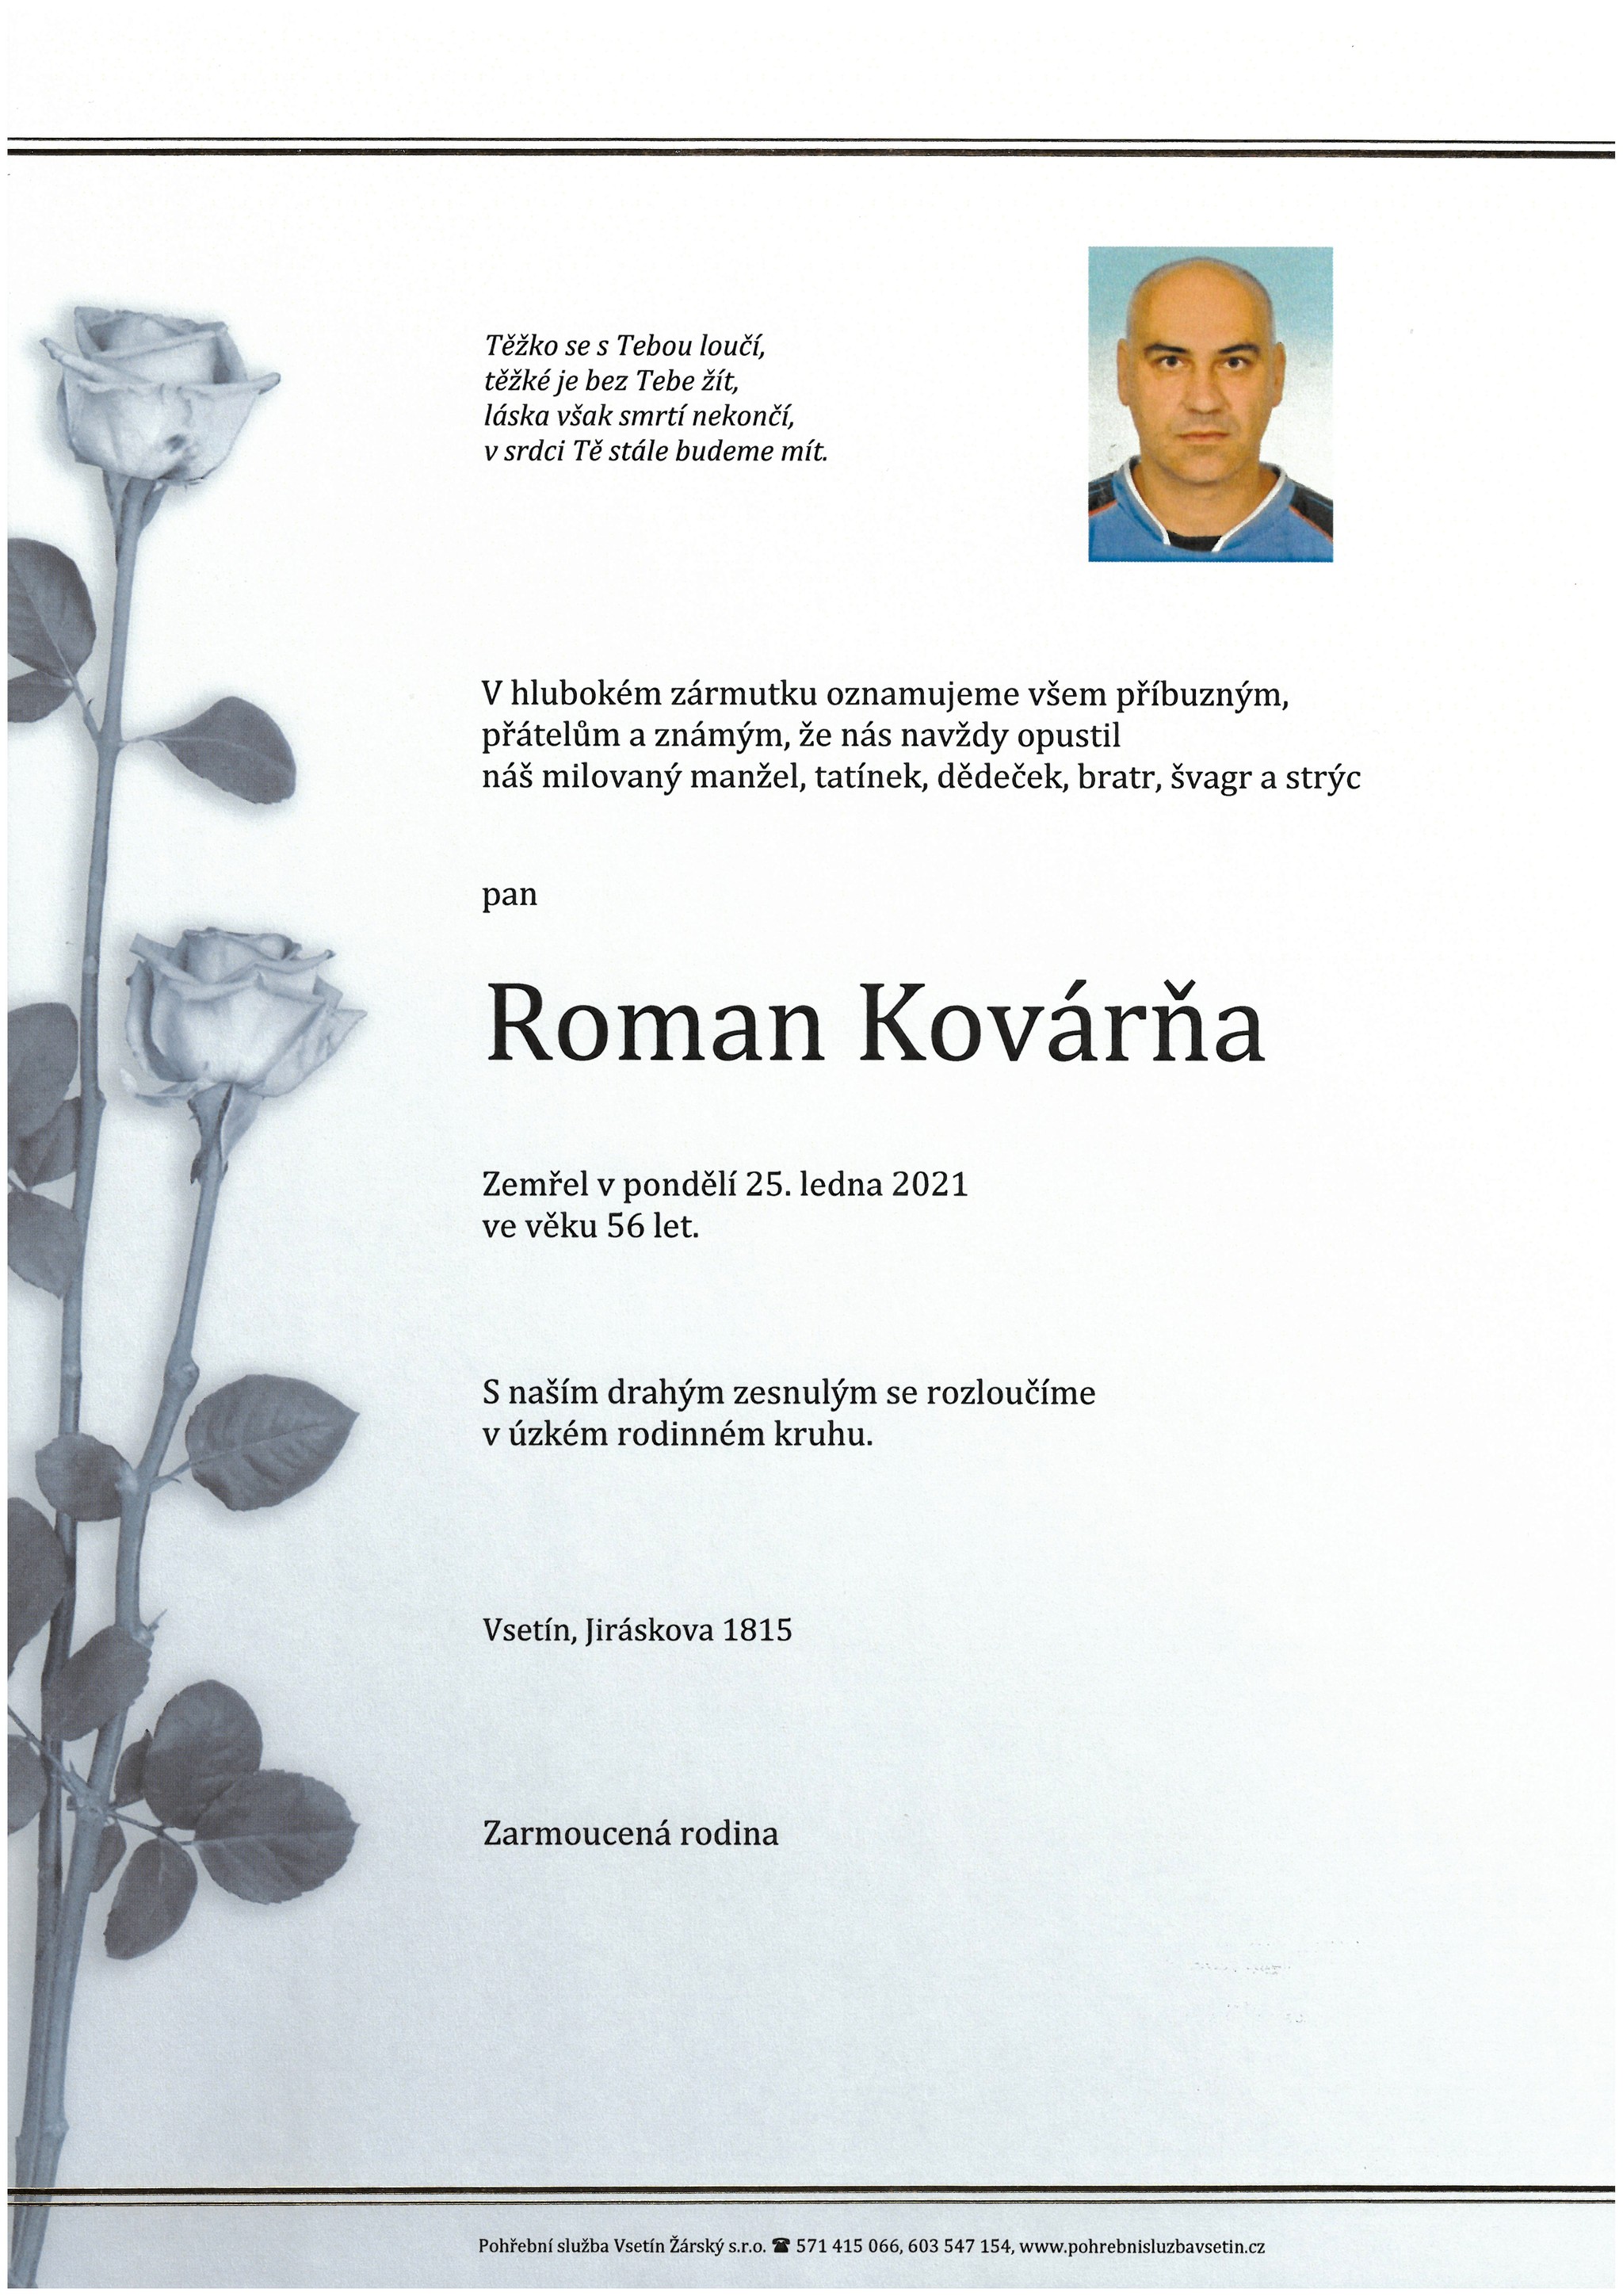 Roman Kovárňa